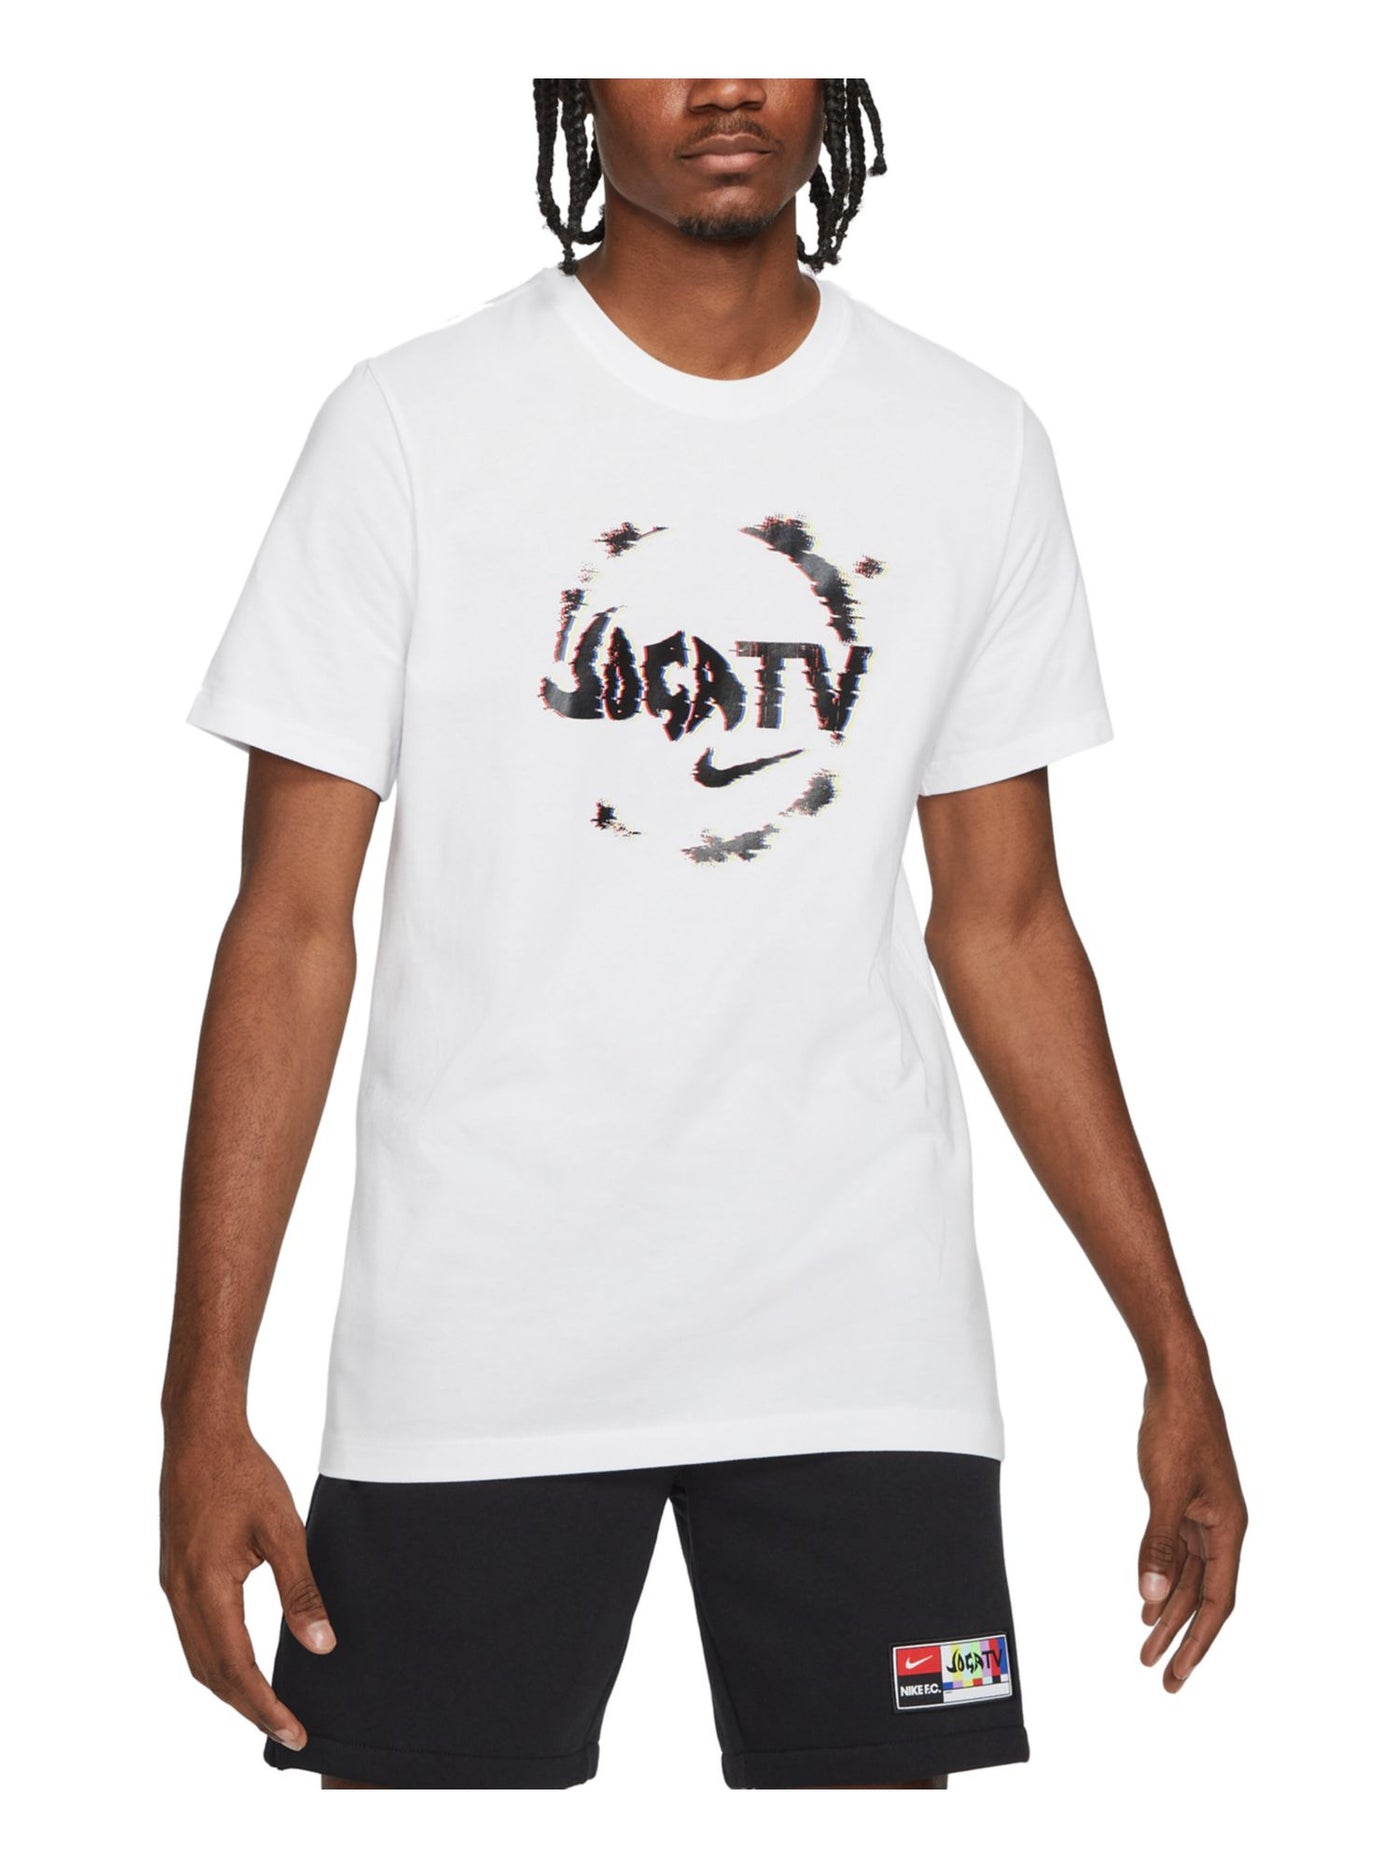 NIKE Mens Joga Tv White Logo Graphic Classic Fit T-Shirt M